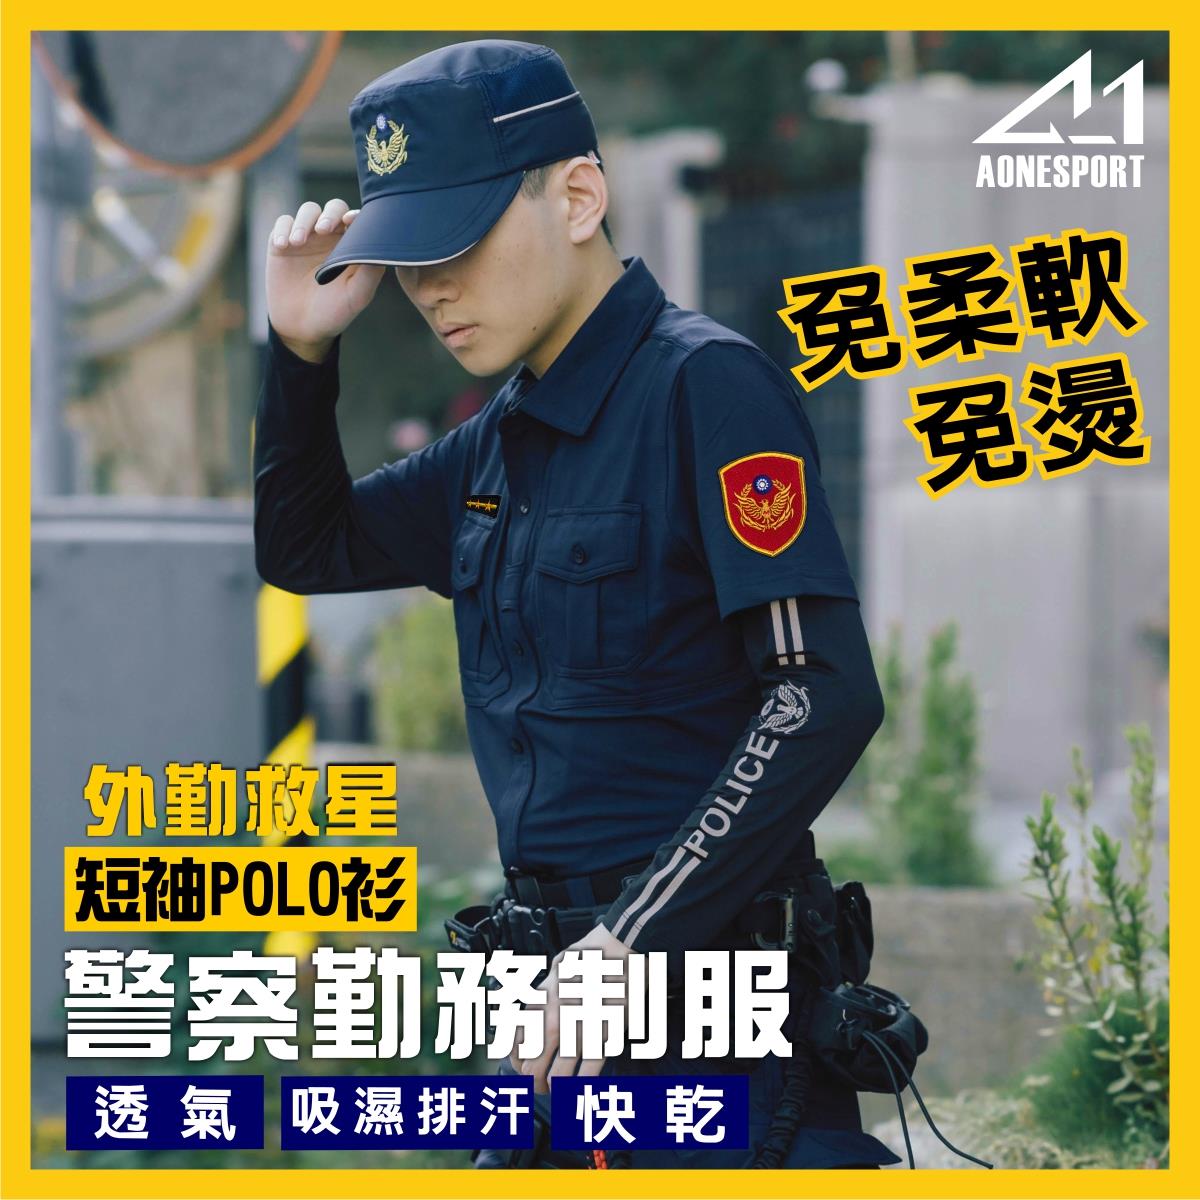 警察制服POLO衫-82047-單件,佳豐有限公司